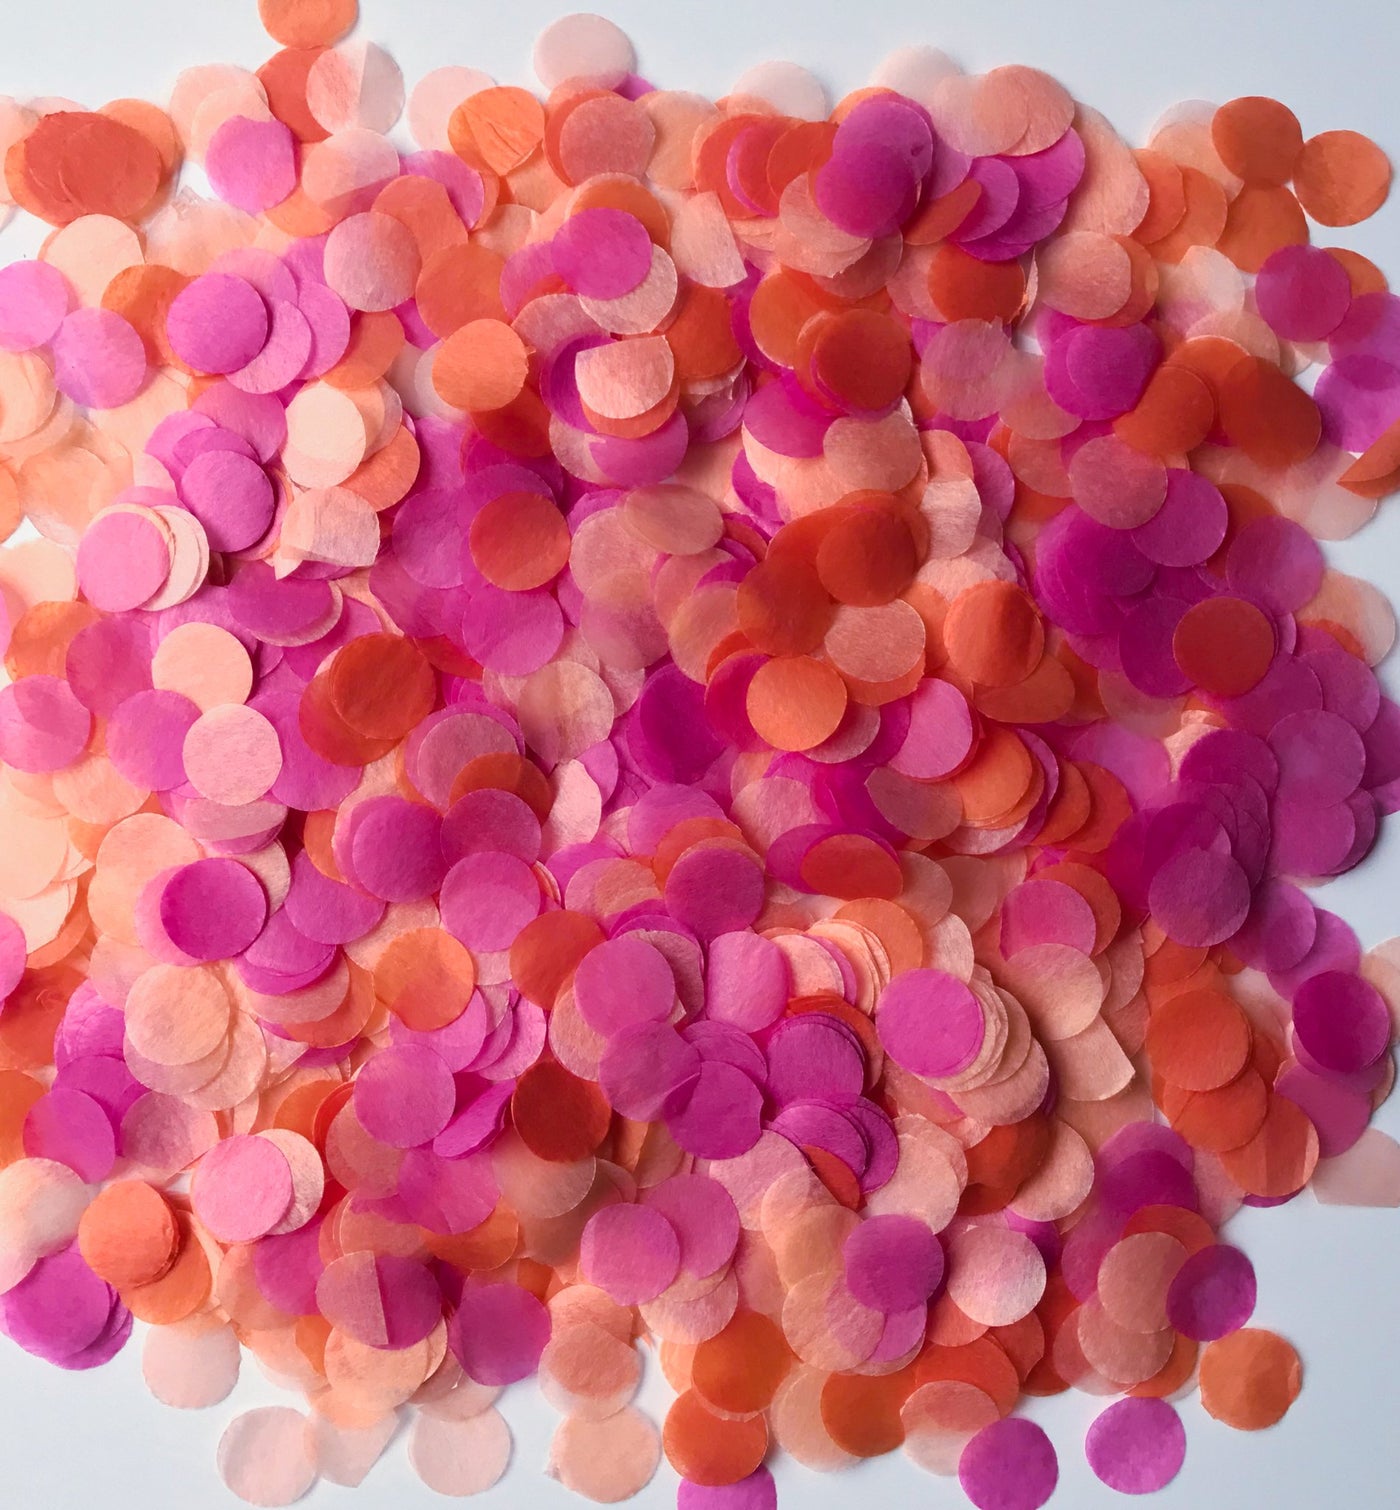 Confetti balloon confetti - orange sherbert confetti in colors of orange, pink and blush